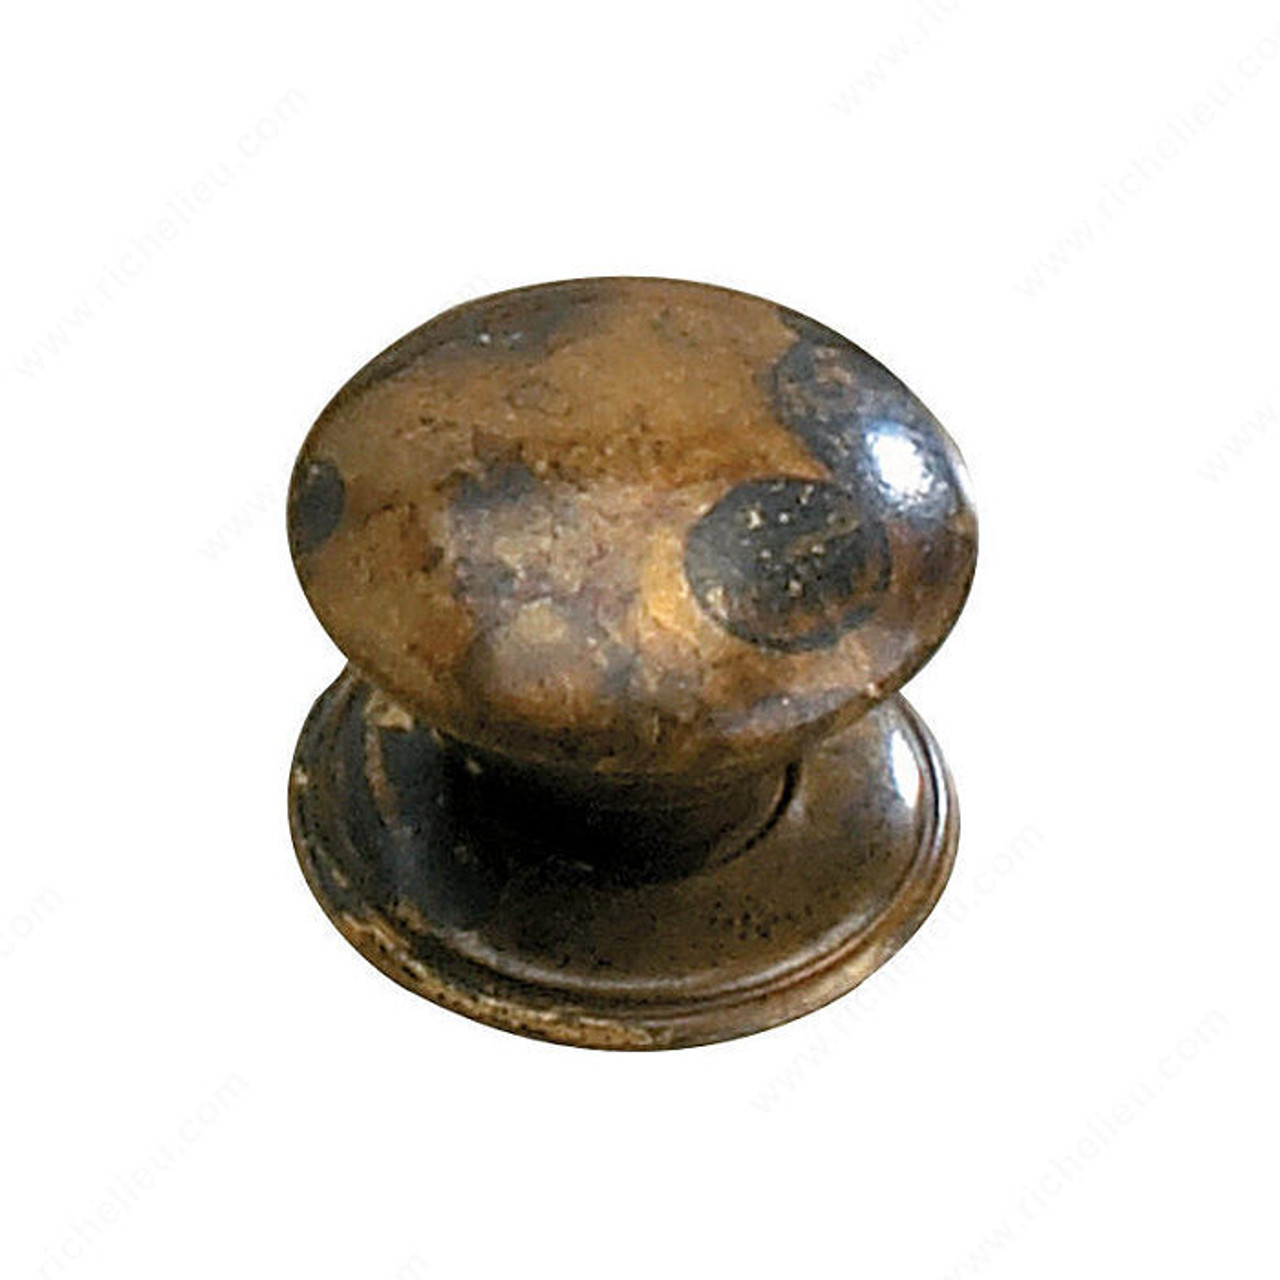 Traditional Brass Knob - 2440, Finish Oxidized Brass, Screw/Nail